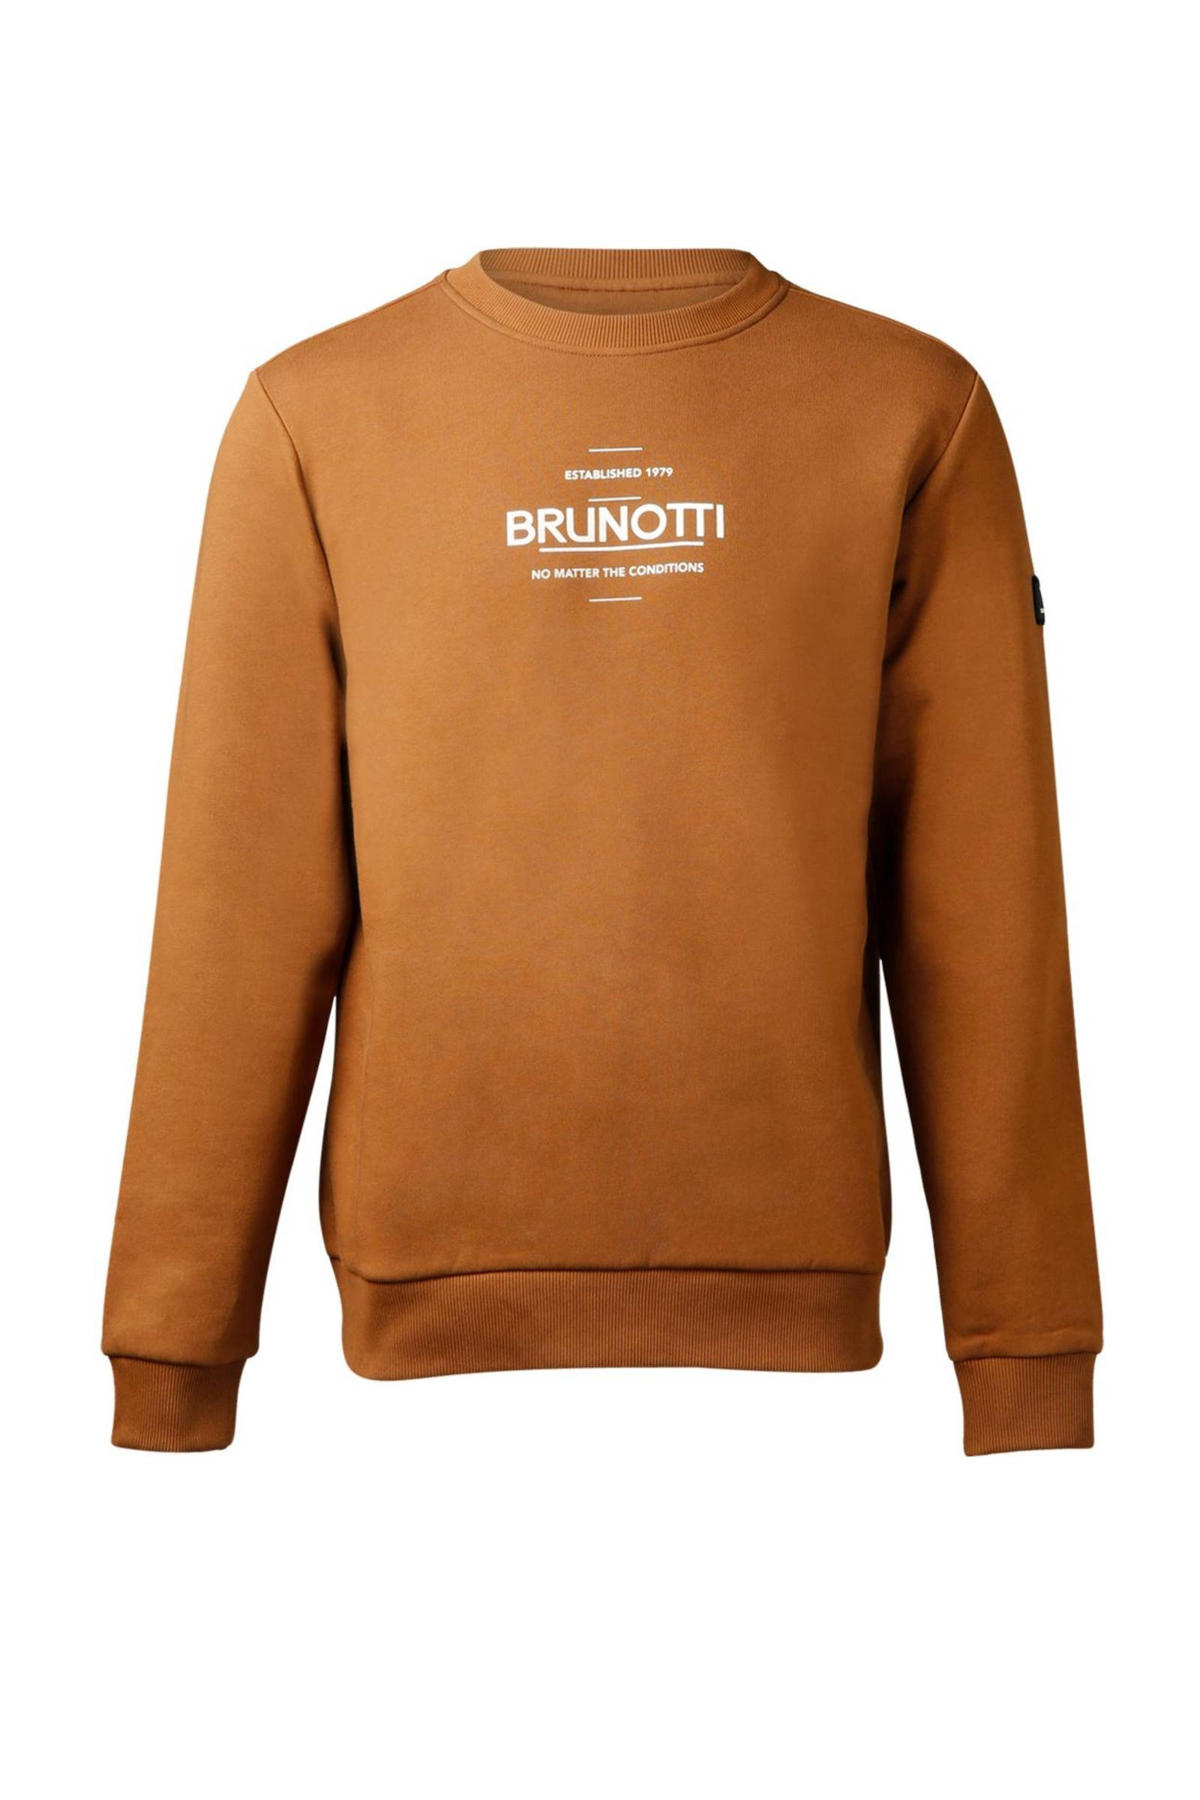 ramp ramp Observeer Brunotti sweater van biologisch katoen bruin | wehkamp